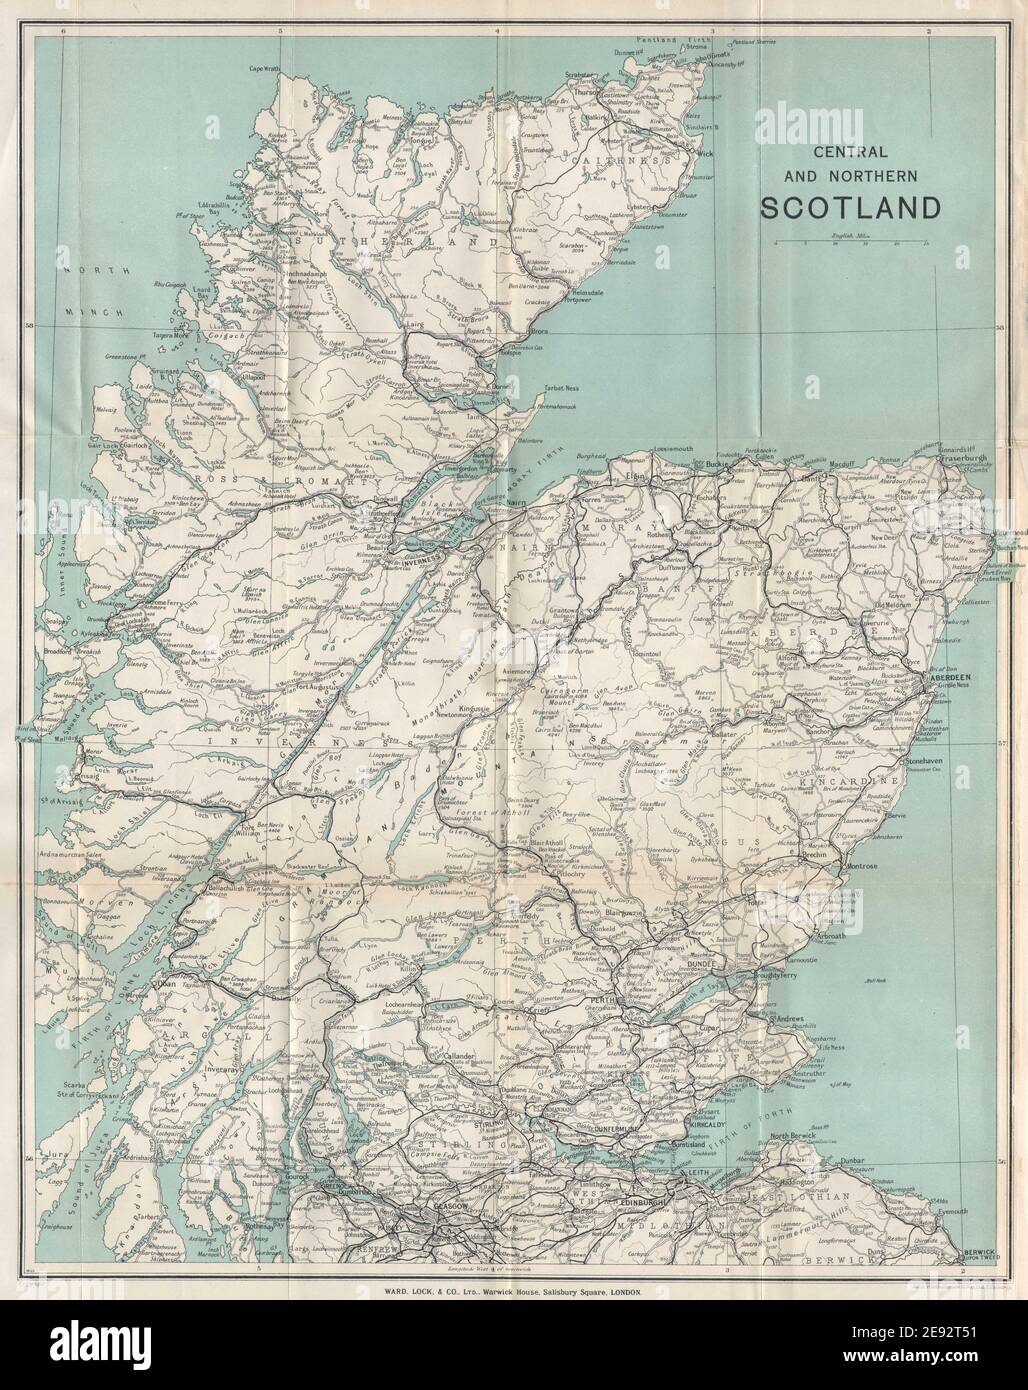 CENTRE ET NORD DE L'ÉCOSSE. Highlands écossais. Chemins de fer. CARTE WARD LOCK 1937 Banque D'Images